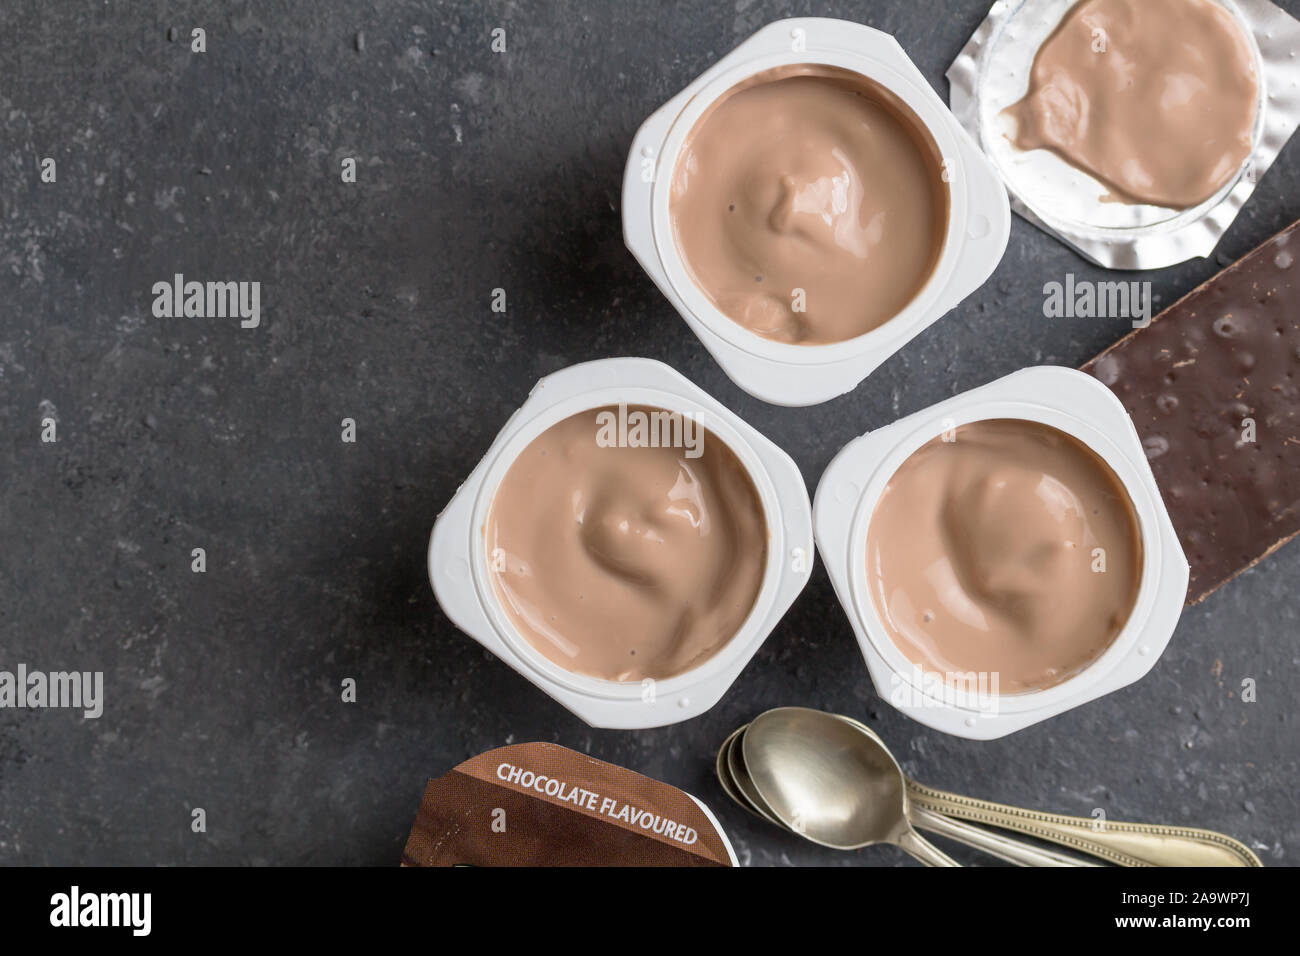 Schokolade Joghurtbecher auf schwarz-grau meliert Hintergrund mit kleinen silbernen Löffel - Drei mit Schokoladegeschmack Joghurtbecher mit dunkler Schokolade auf Stockfoto